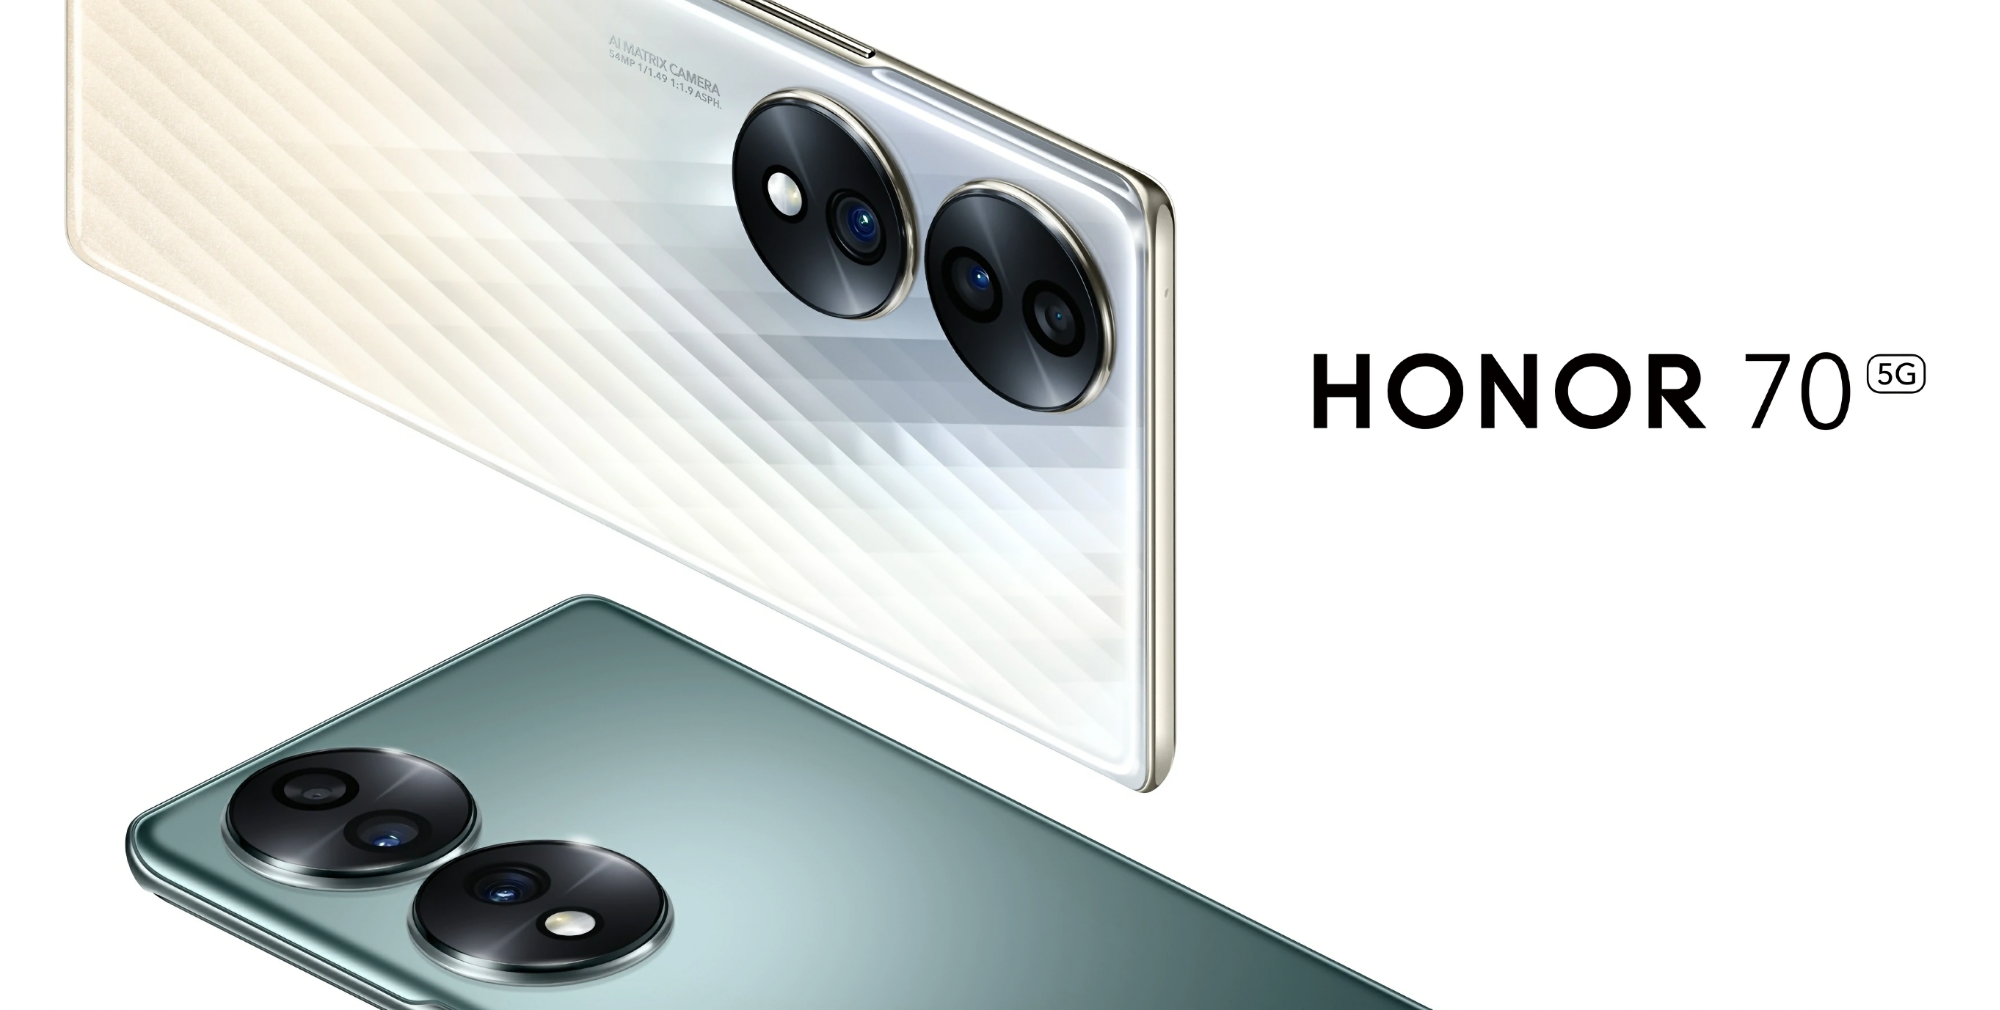 El Honor 70 con chip Snapdragon 778G+, pantalla AMOLED de 120Hz y cámara de  54MP se lanza globalmente | gagadget.com